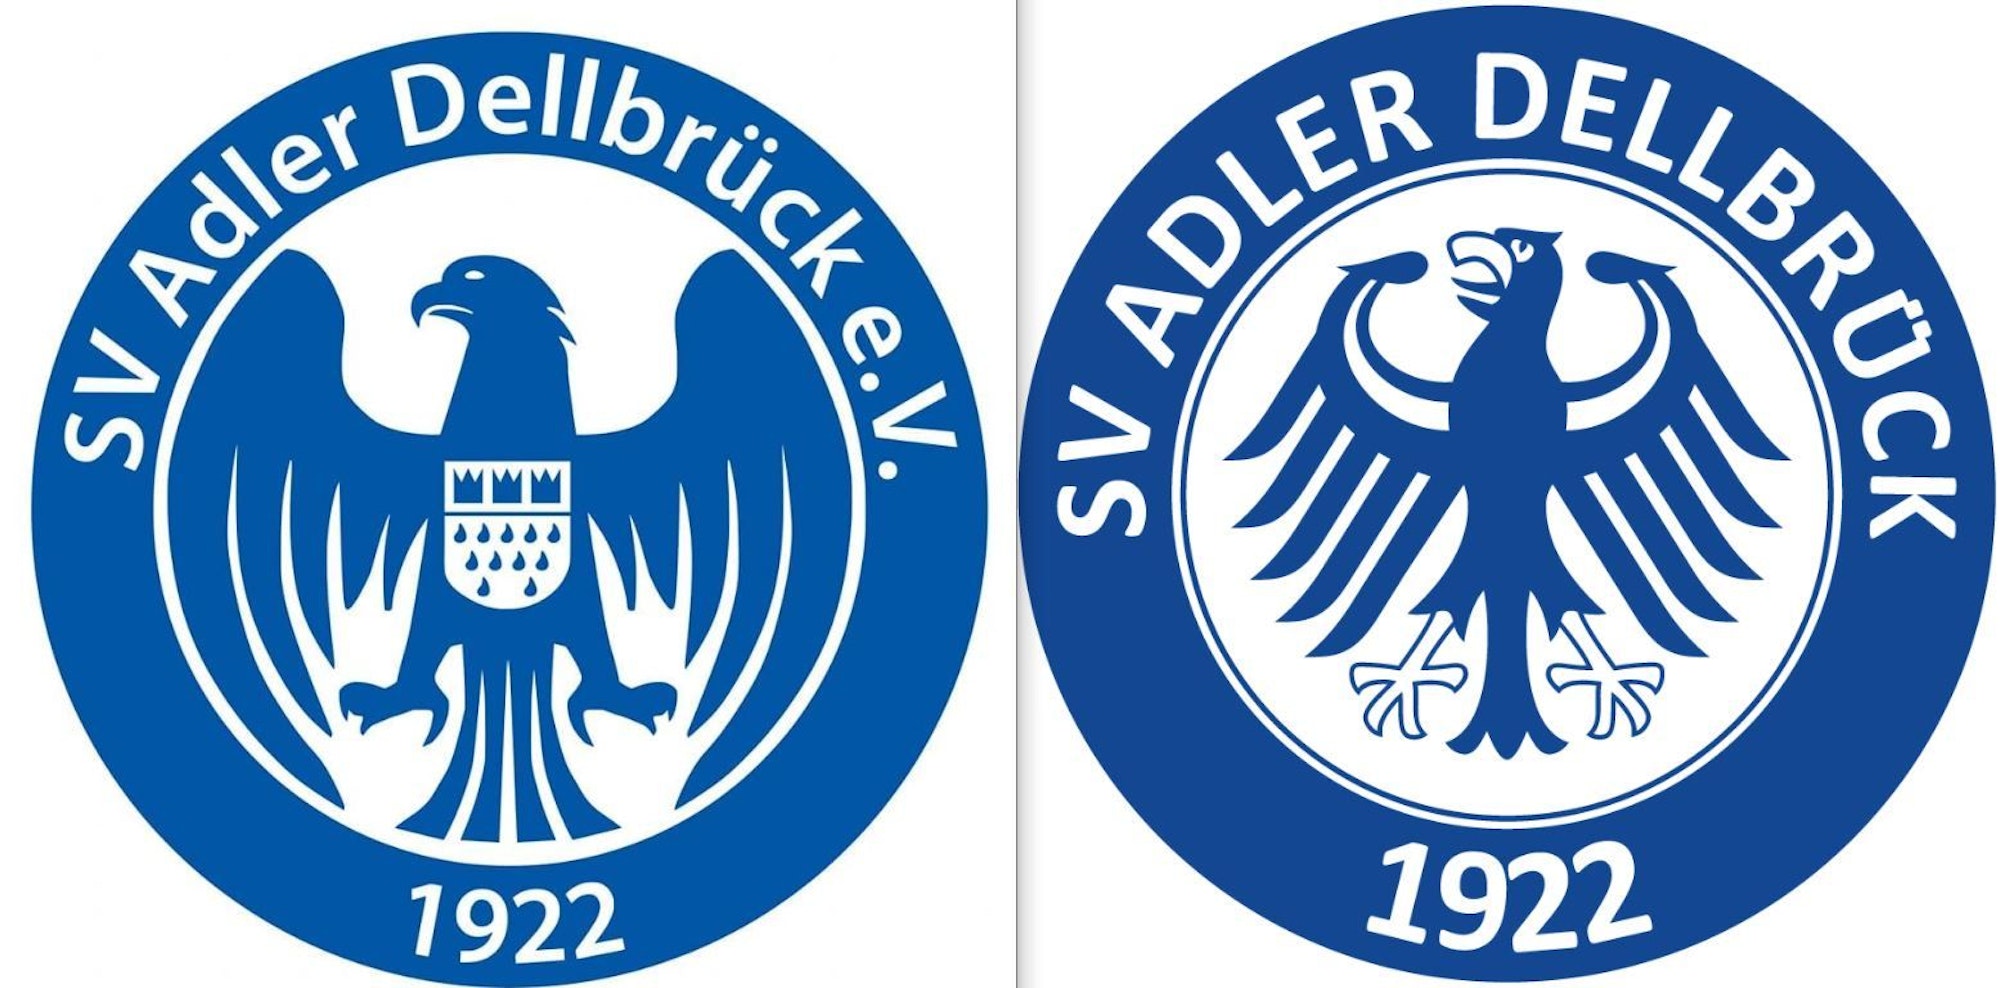 Das alte und das neue Wappen des SV Adler Dellbrück.